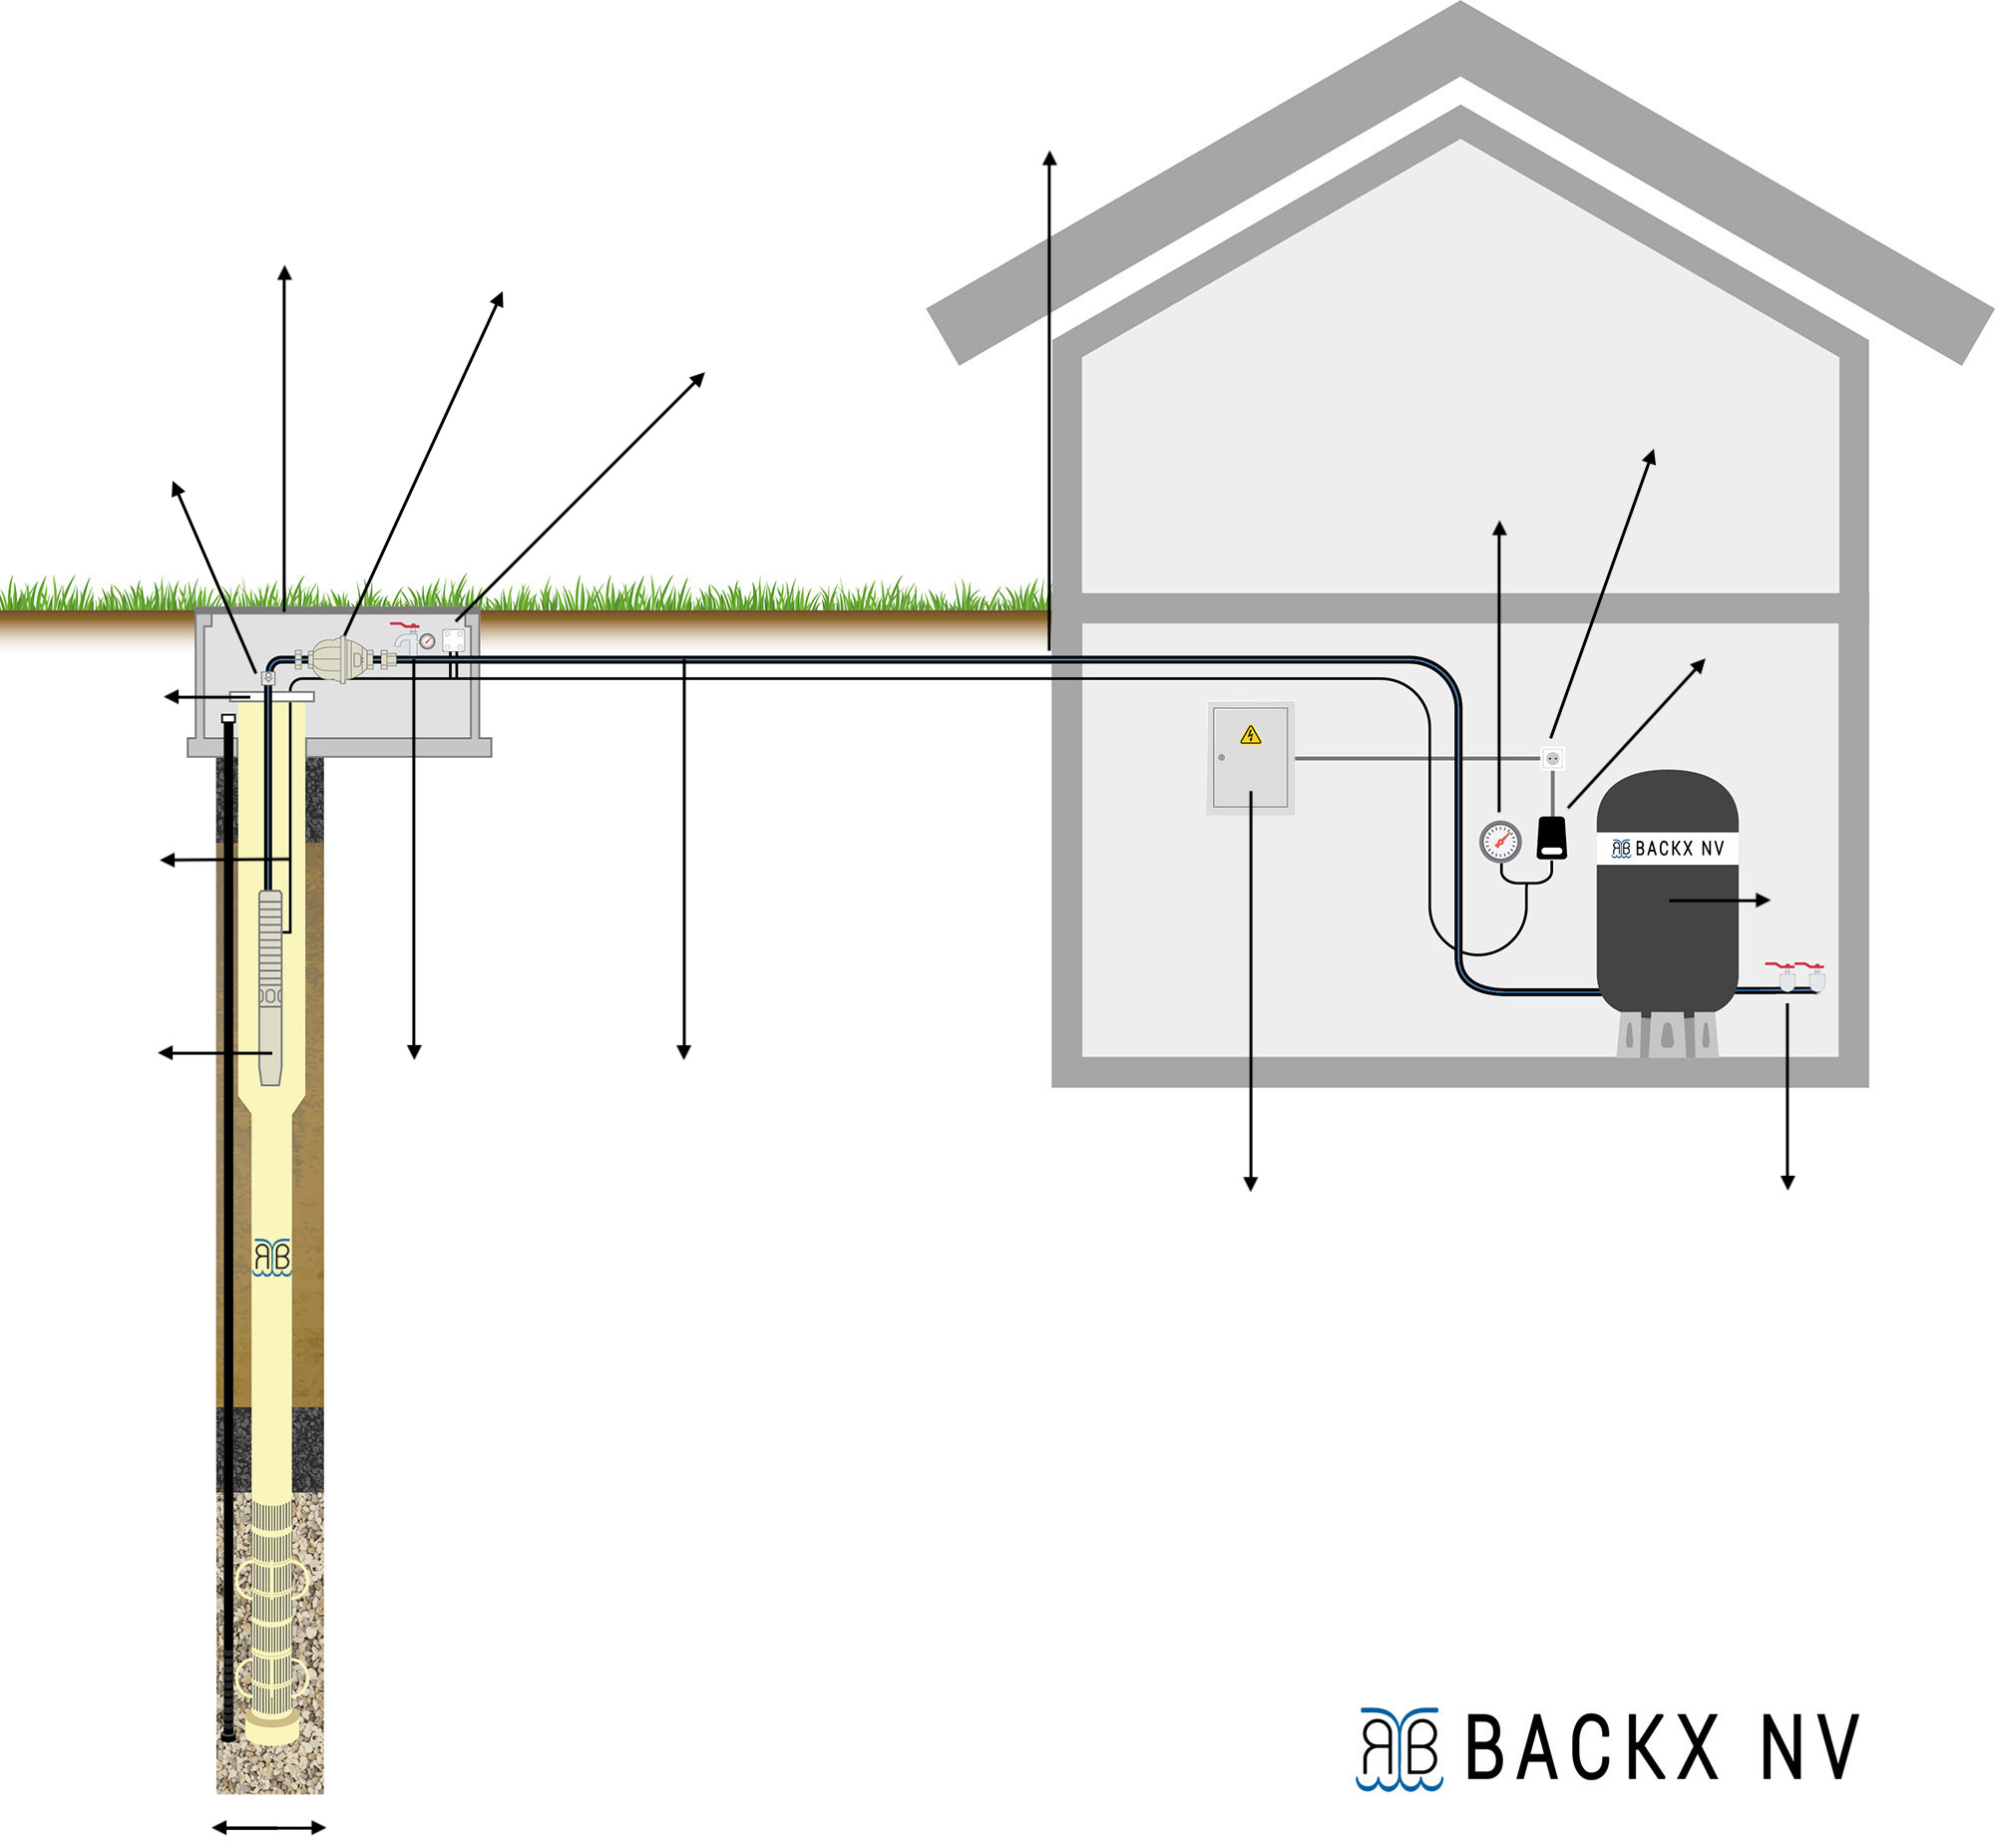 Backx NV schema pompinstallatie